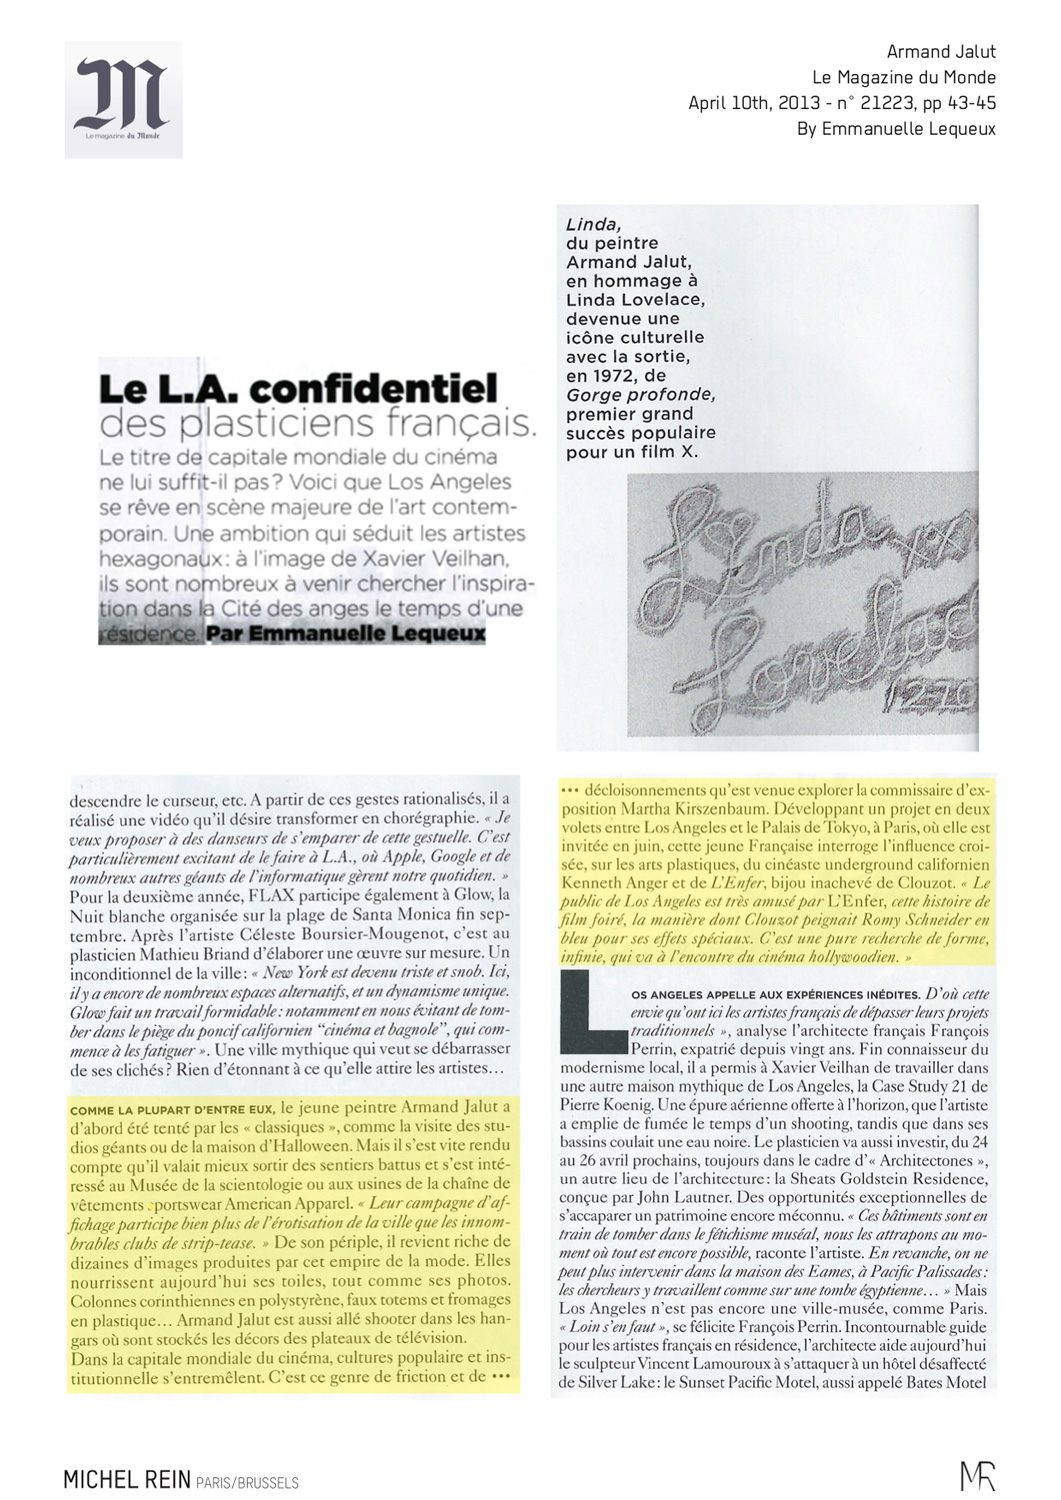 Le L.A. confidentiel des plasticiens franais - Le Magazine du Monde